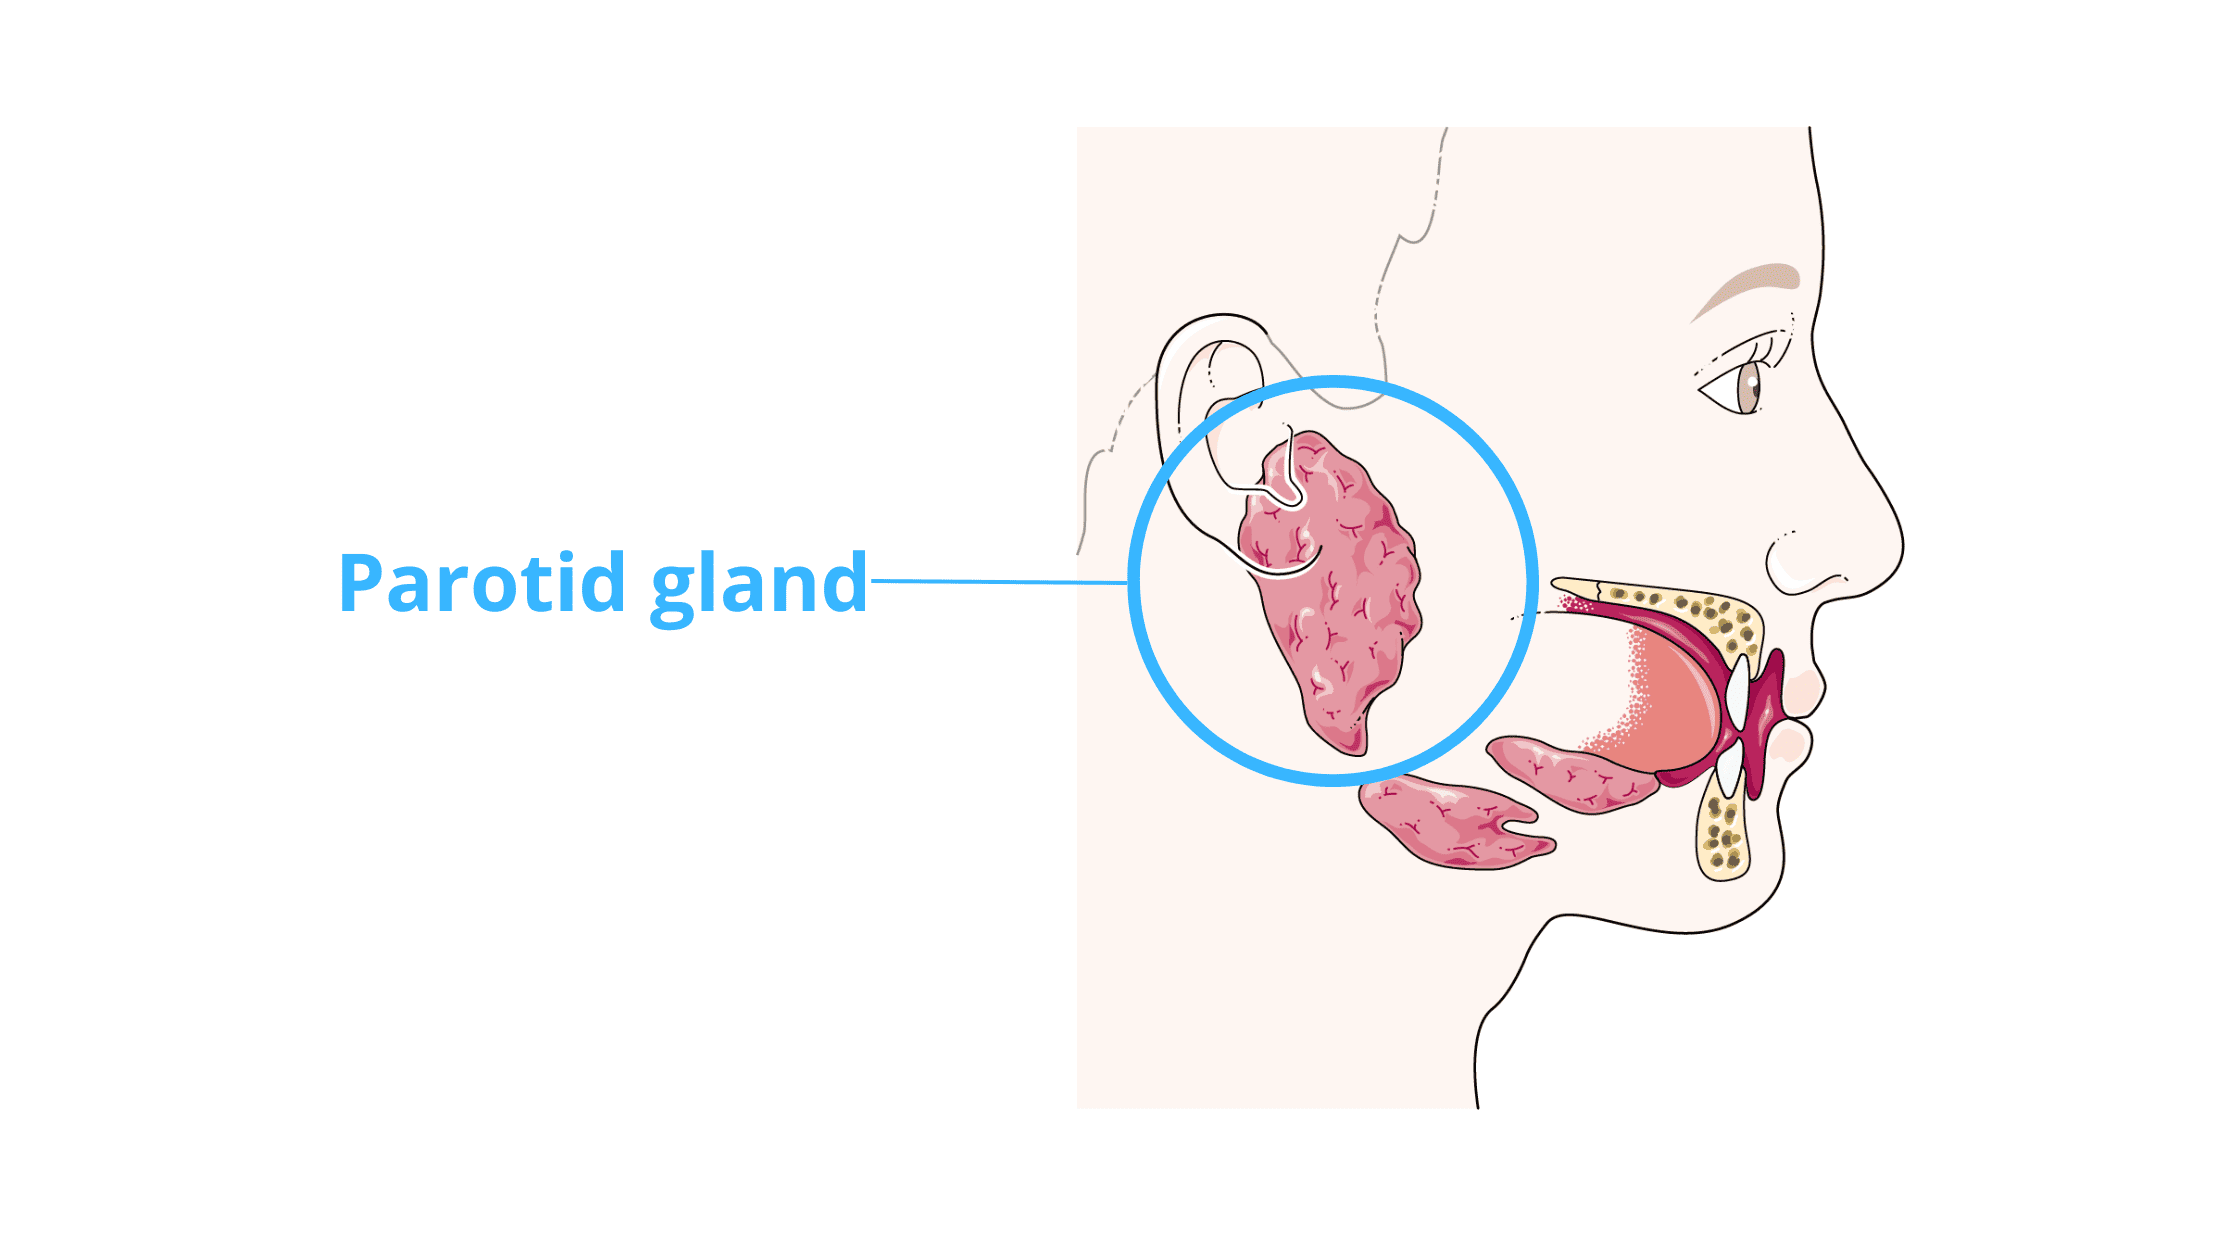 salivary gland tumors